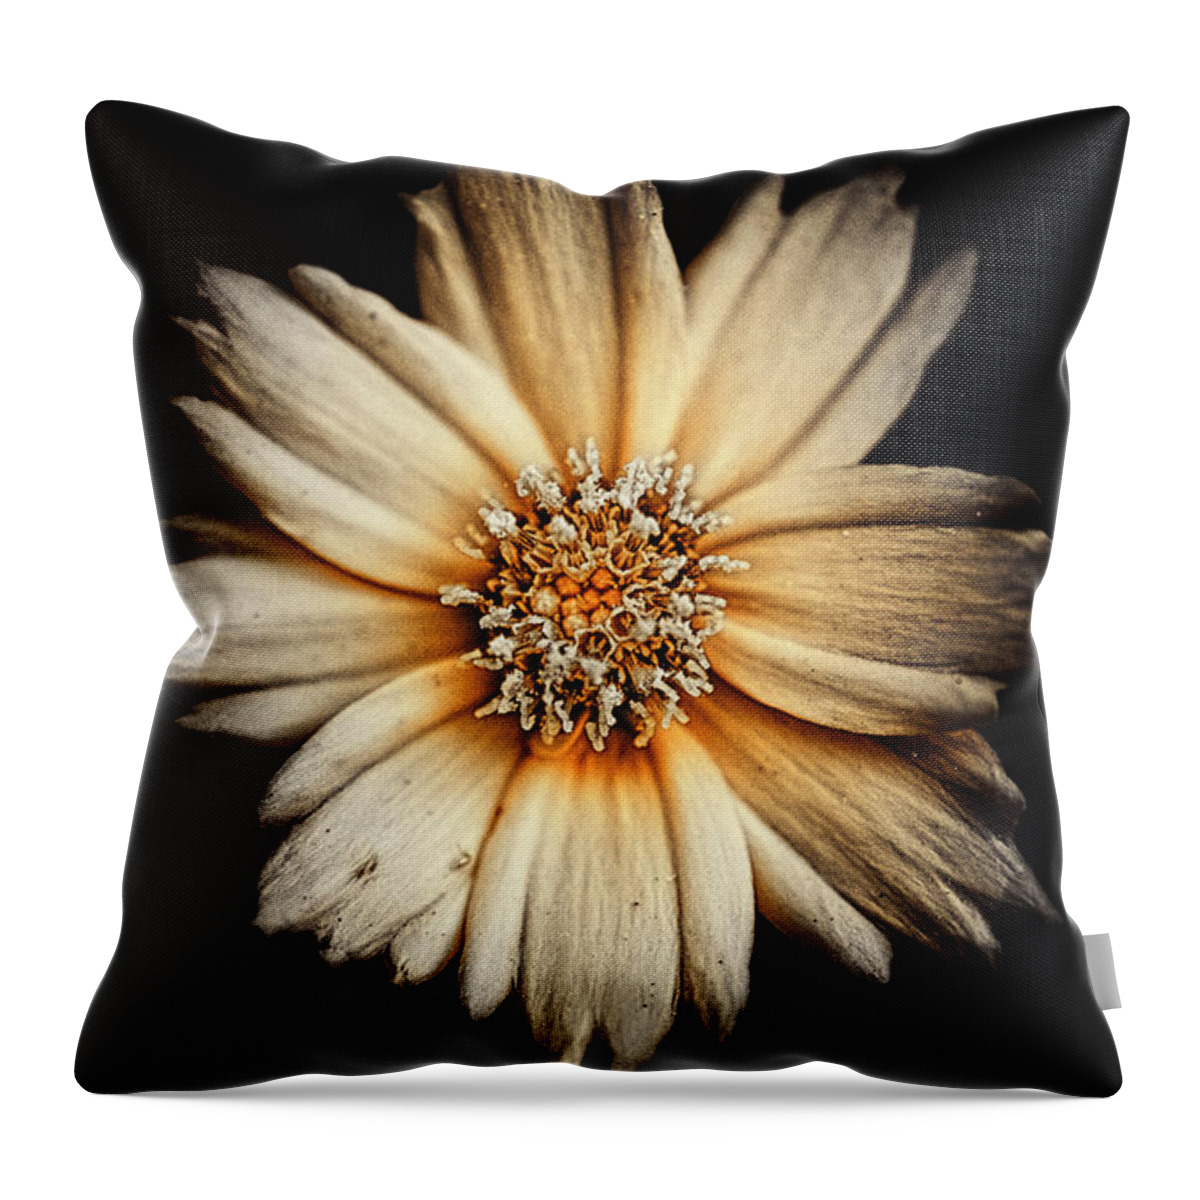 Flower Throw Pillow featuring the photograph Deflowering by Scott Wyatt